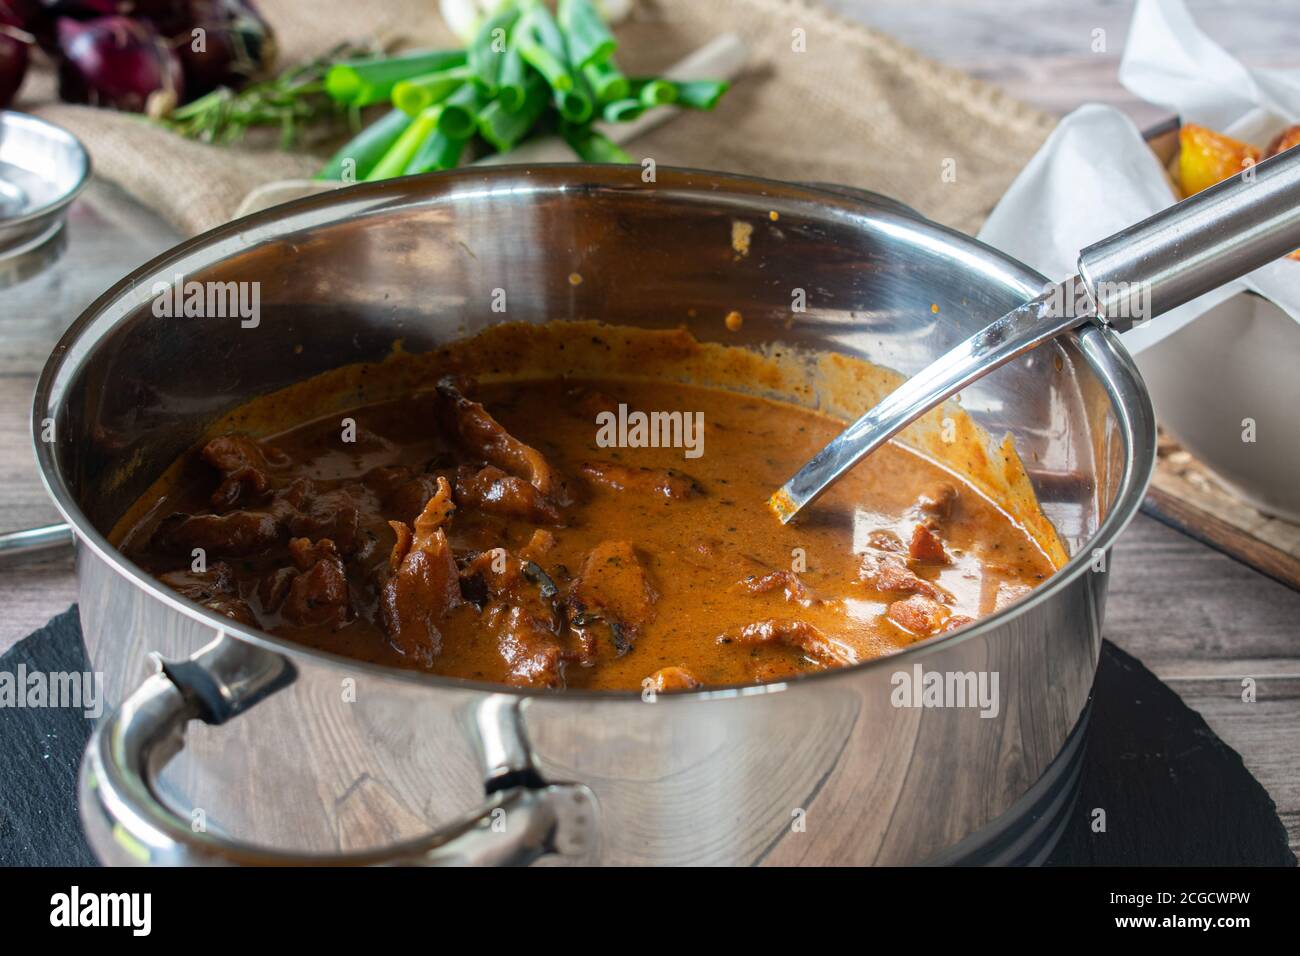 porc braisé dans une sauce crémeuse servi dans une casserole sur une table rustique avec louche Banque D'Images